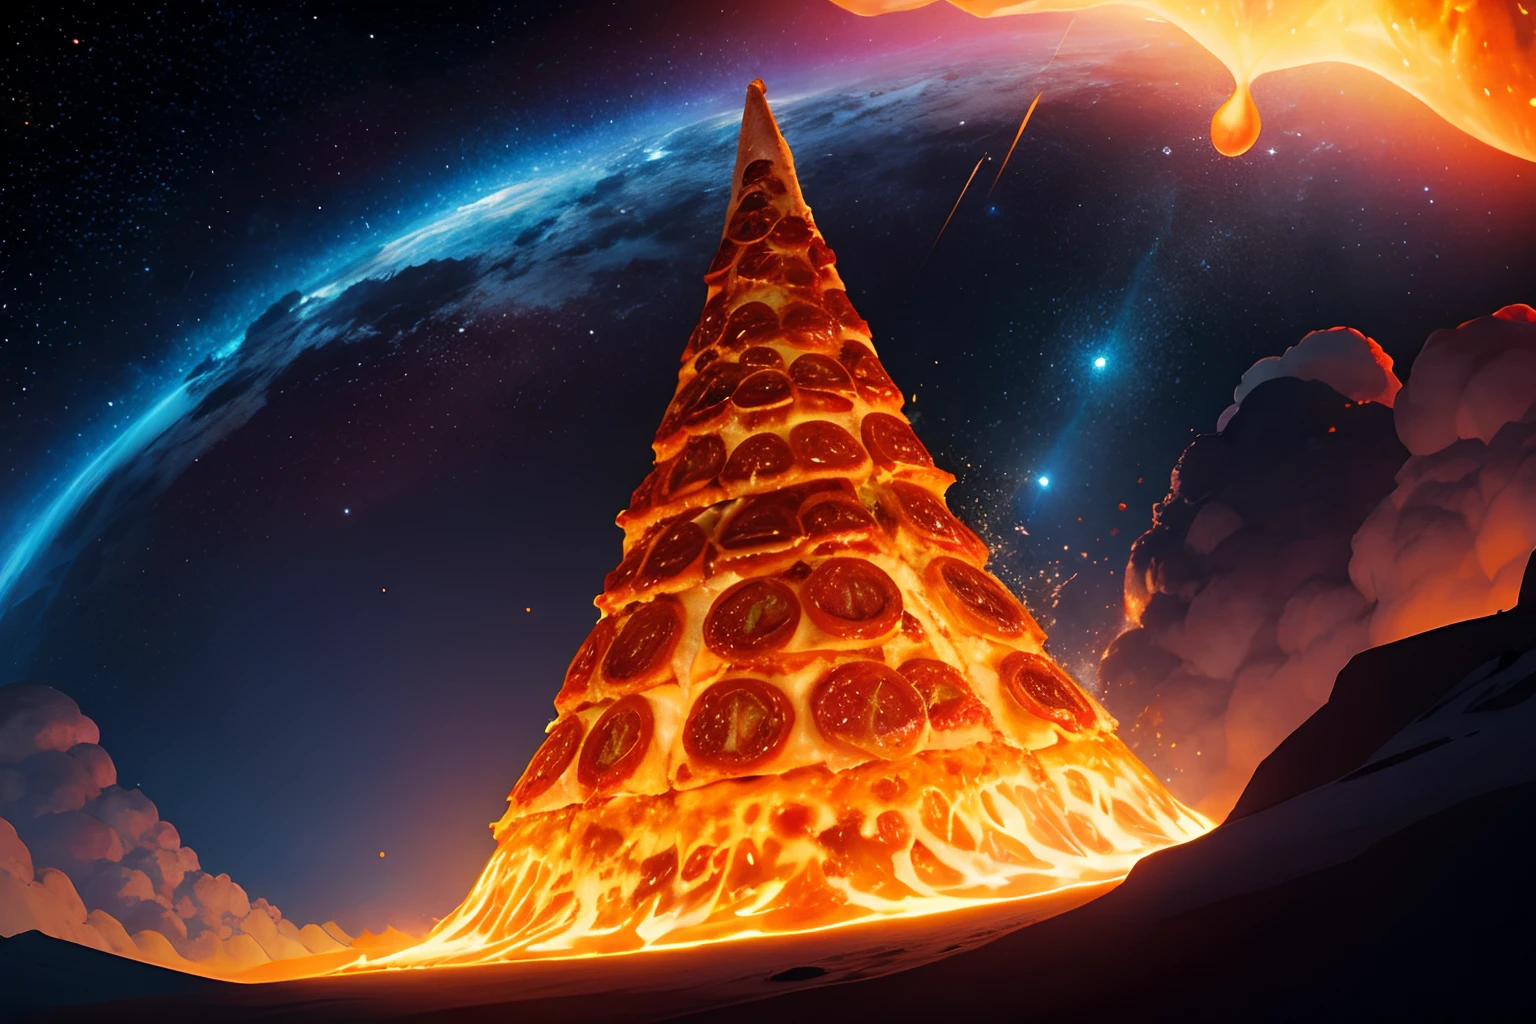 Volcán de pizza en erupción, Pizza brillante, Fondo del universo, escenario